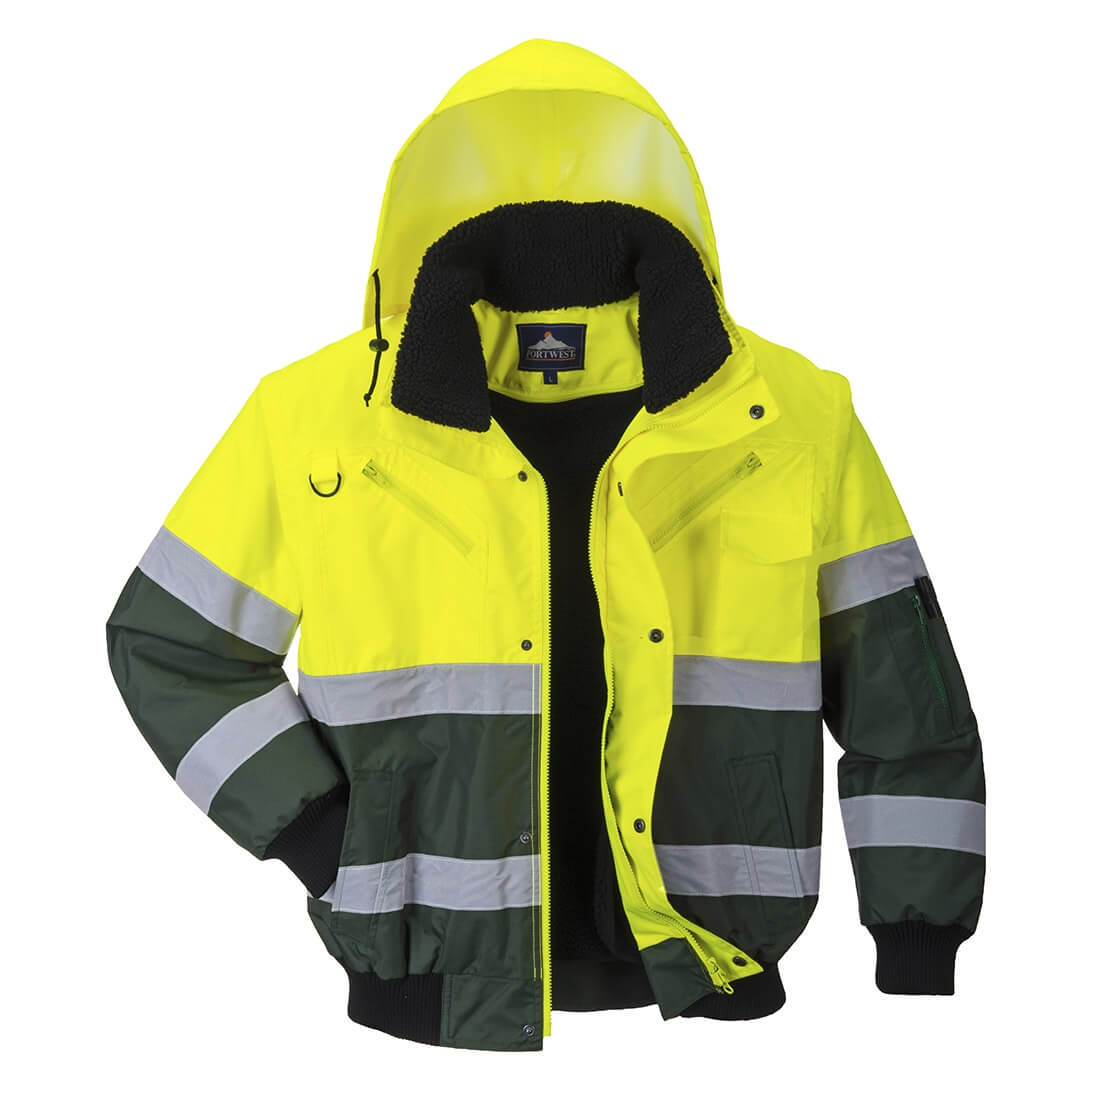 X Hi-Vis Bomber Jacket - Safetywear